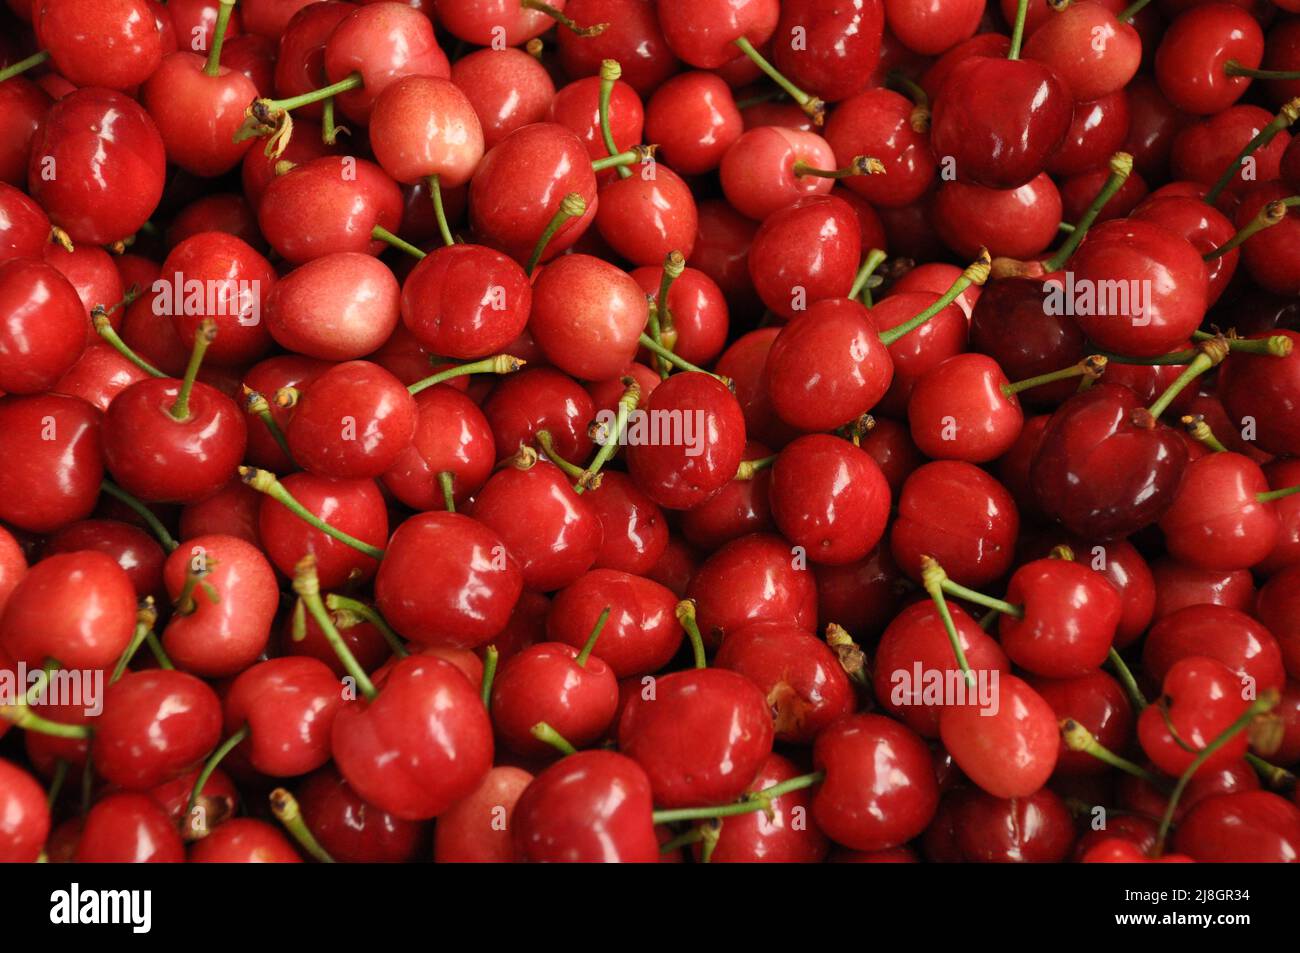 Vue de dessus de fond de cerises rouges et roses biologiques. Tas de fruits de printemps frais et délicieux récoltés dans un marché de rue, bazar à Manisa, Turquie. Banque D'Images